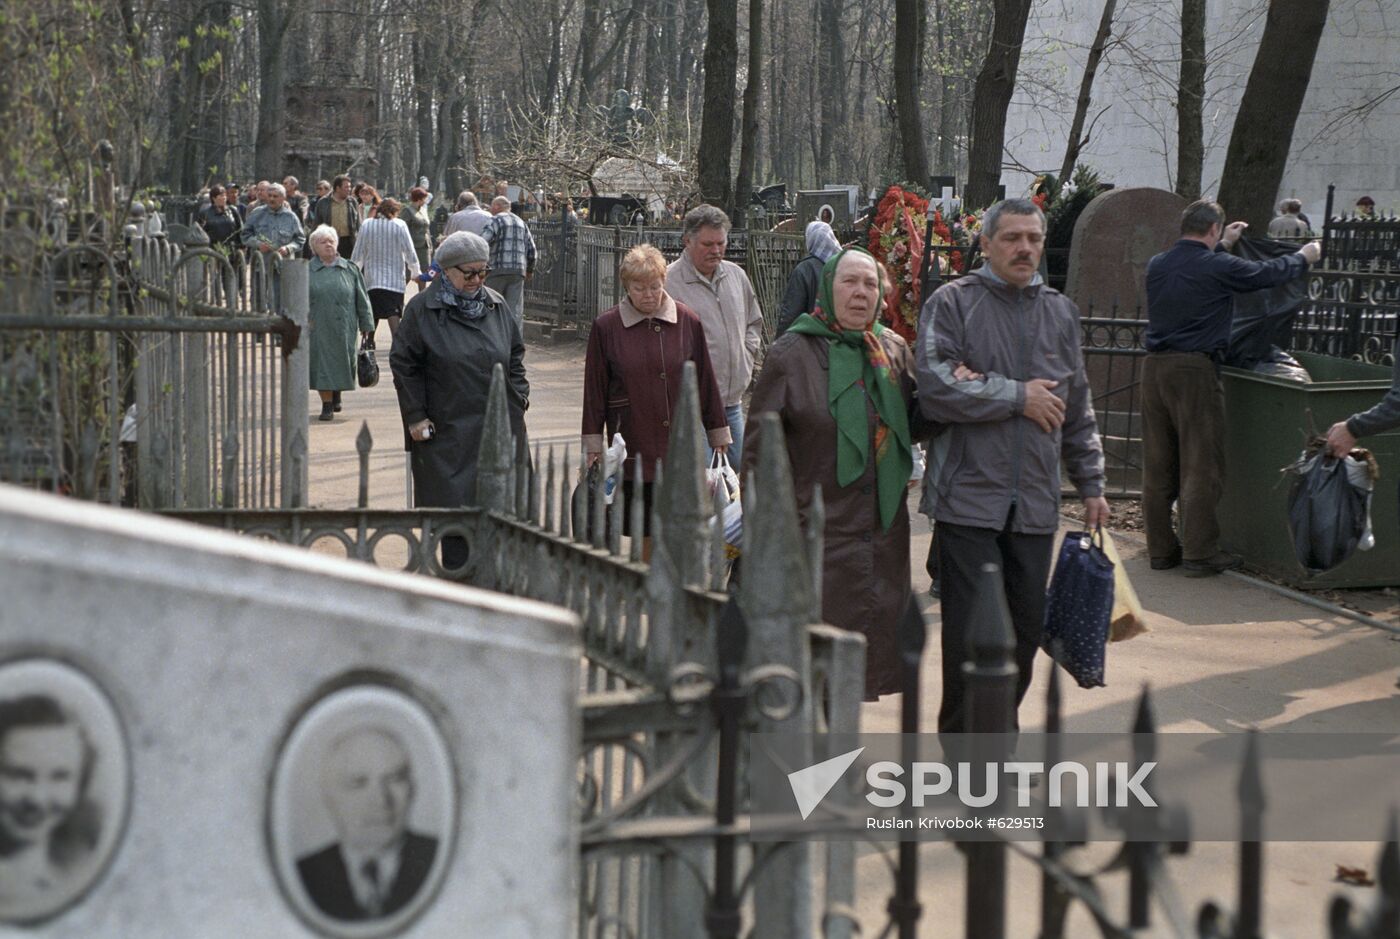 At Vagankovskoye Cemetery